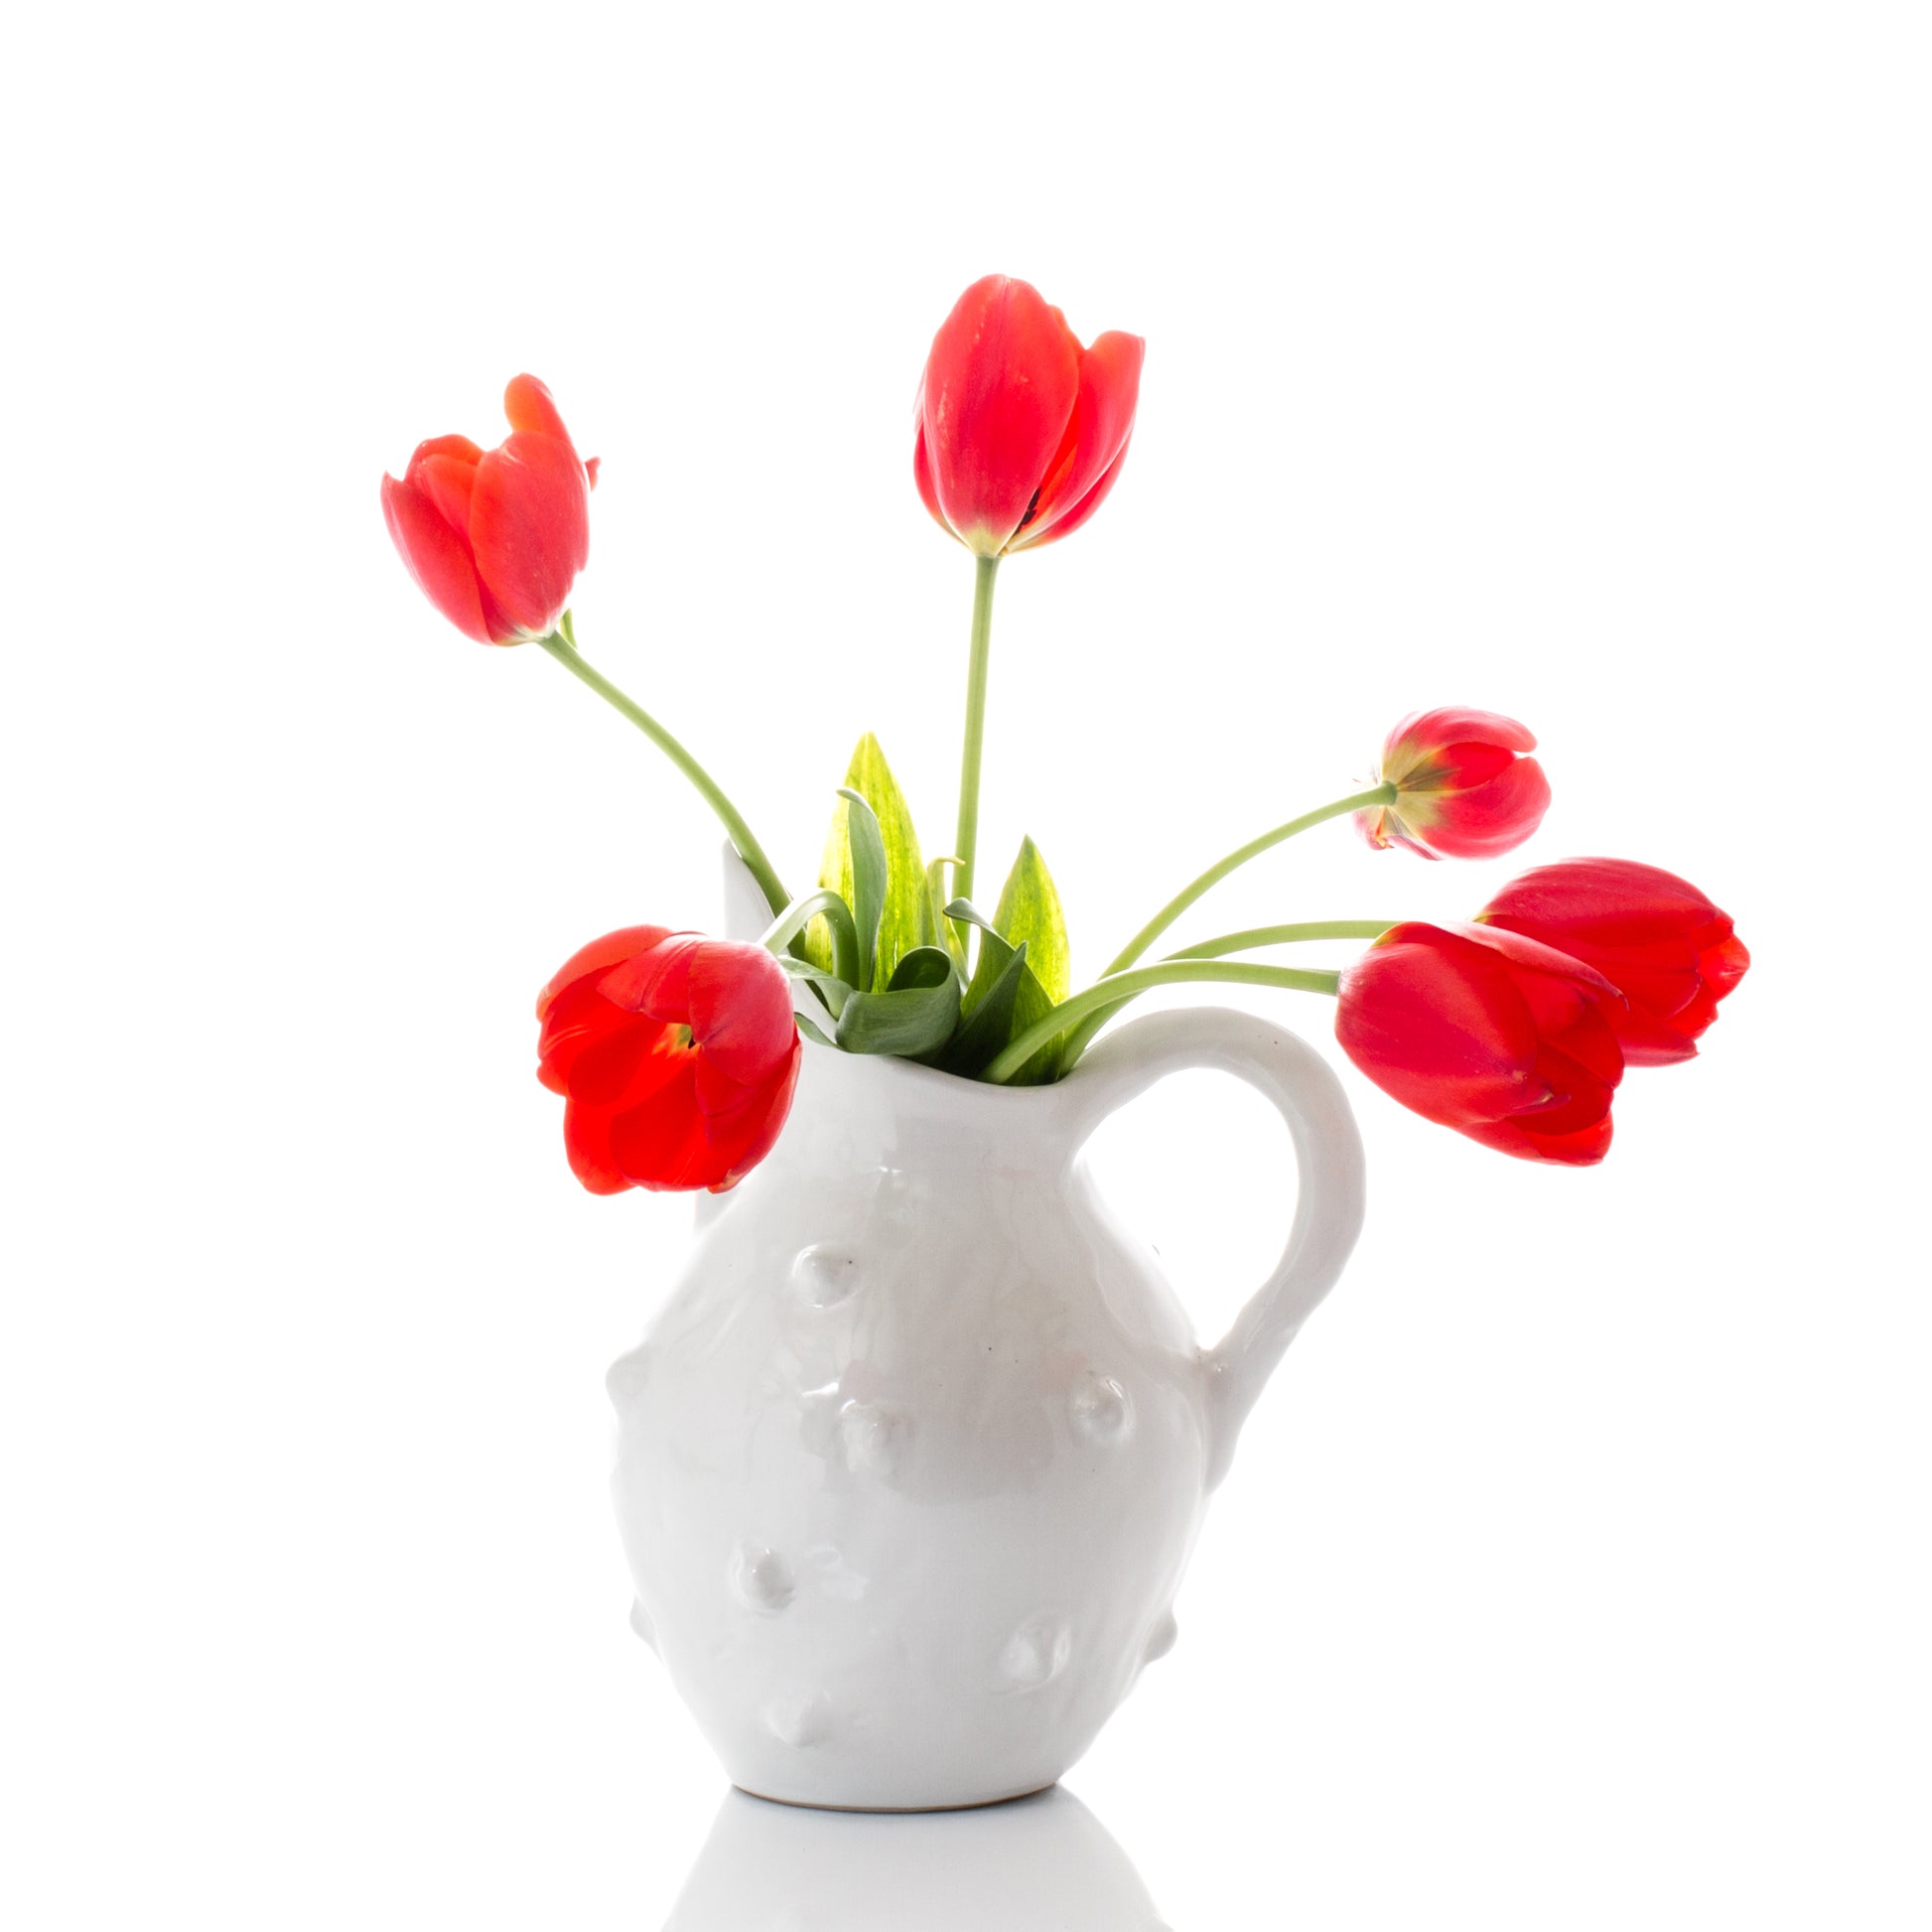 flower vase margarita pitcher